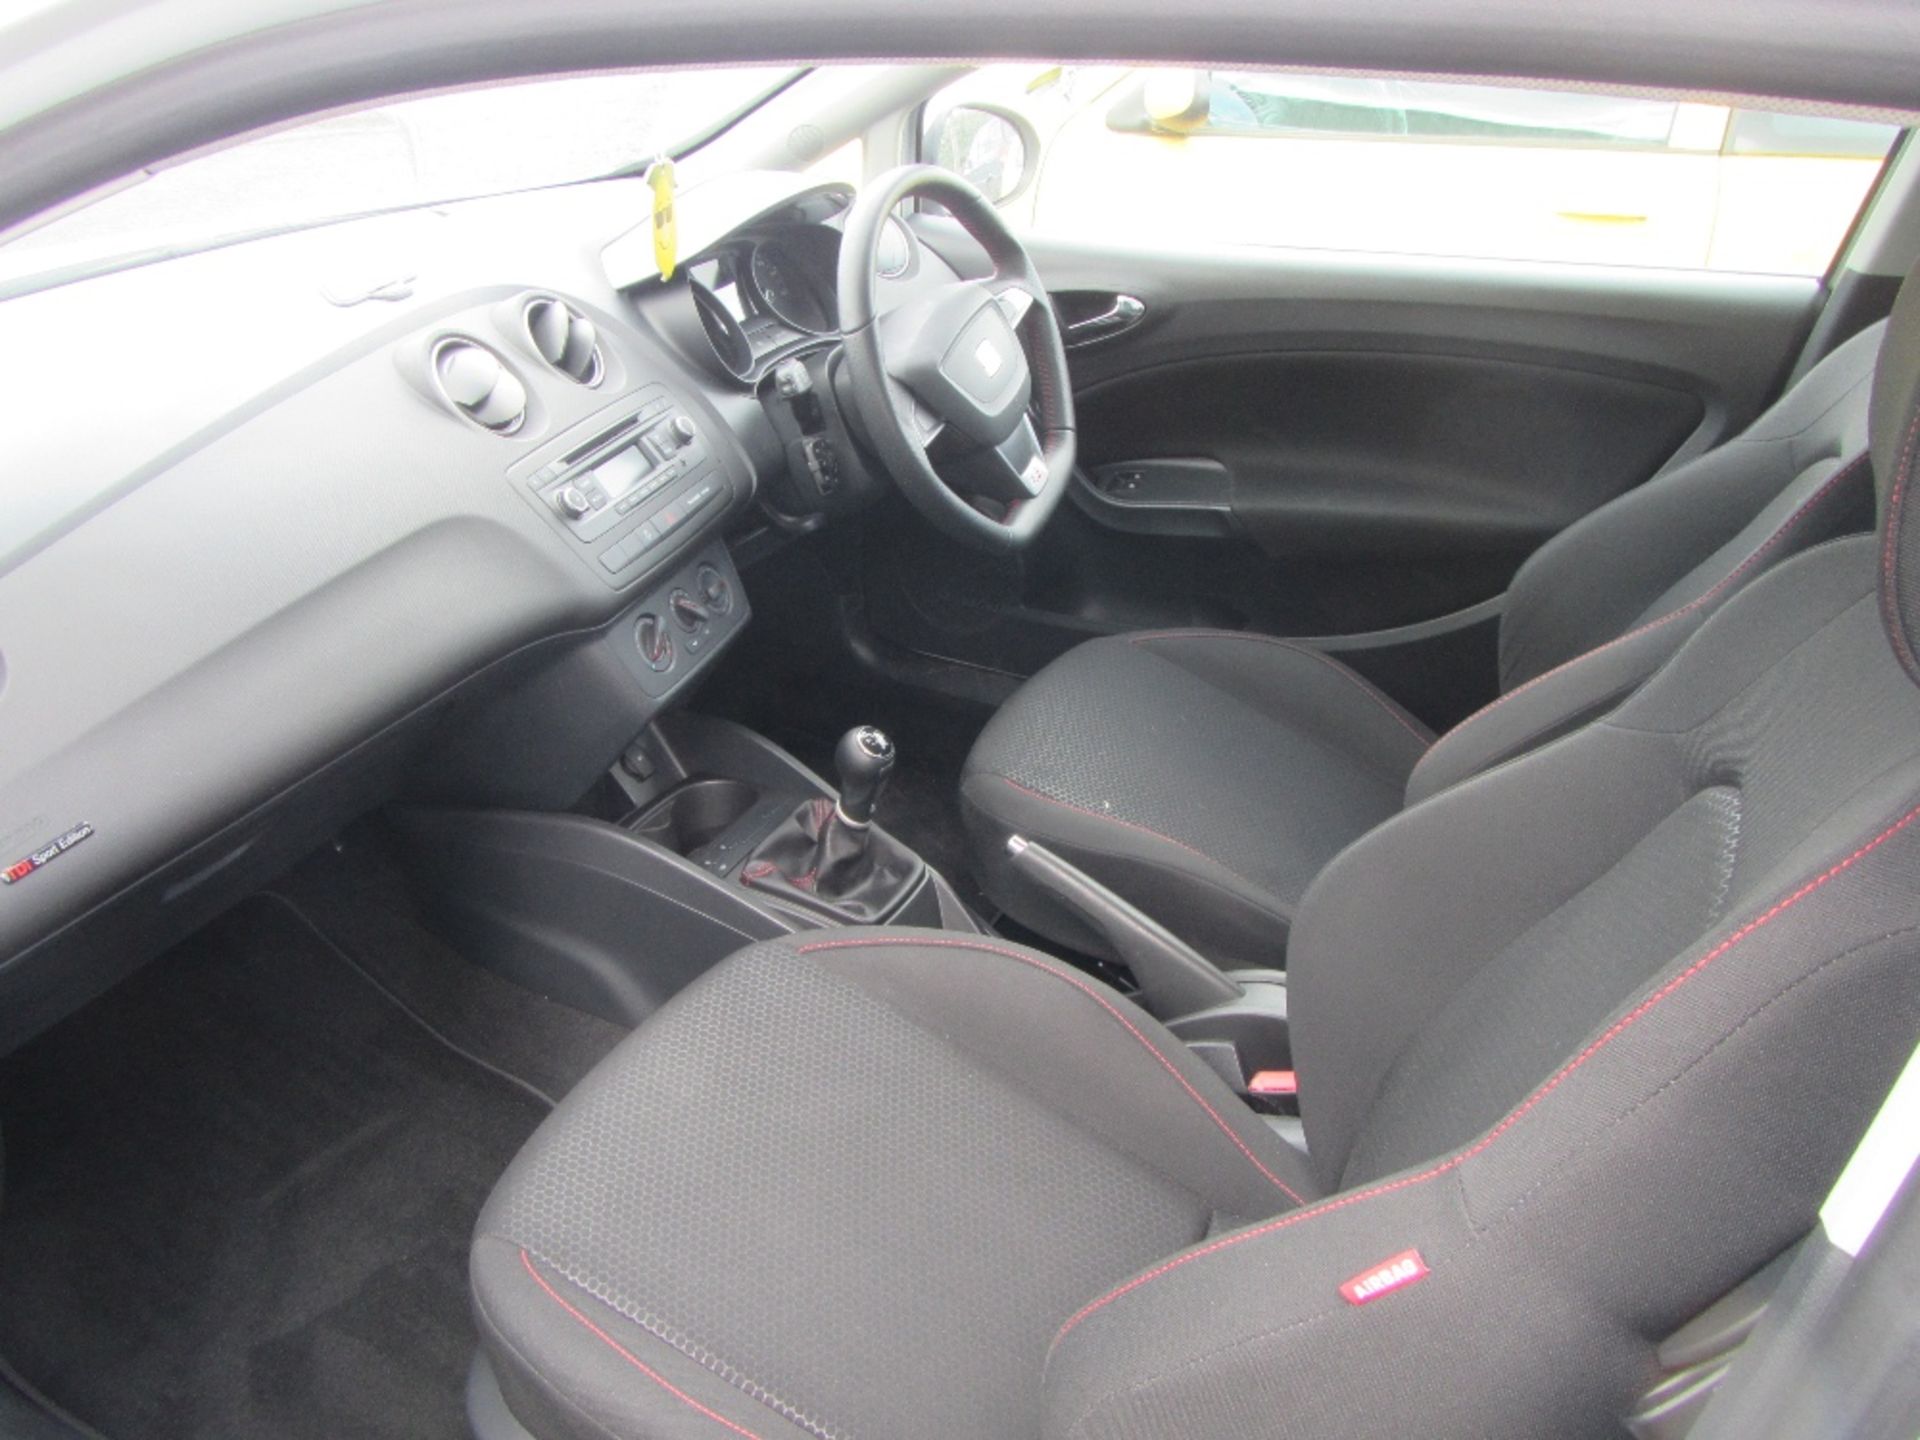 Seat Ibiza 1.6 ltr TDI Sport c/w 2 keys, 3 door hatchback & V5 Mileage: 12,250 MOT till 14/8/17 Reg. - Image 6 of 6